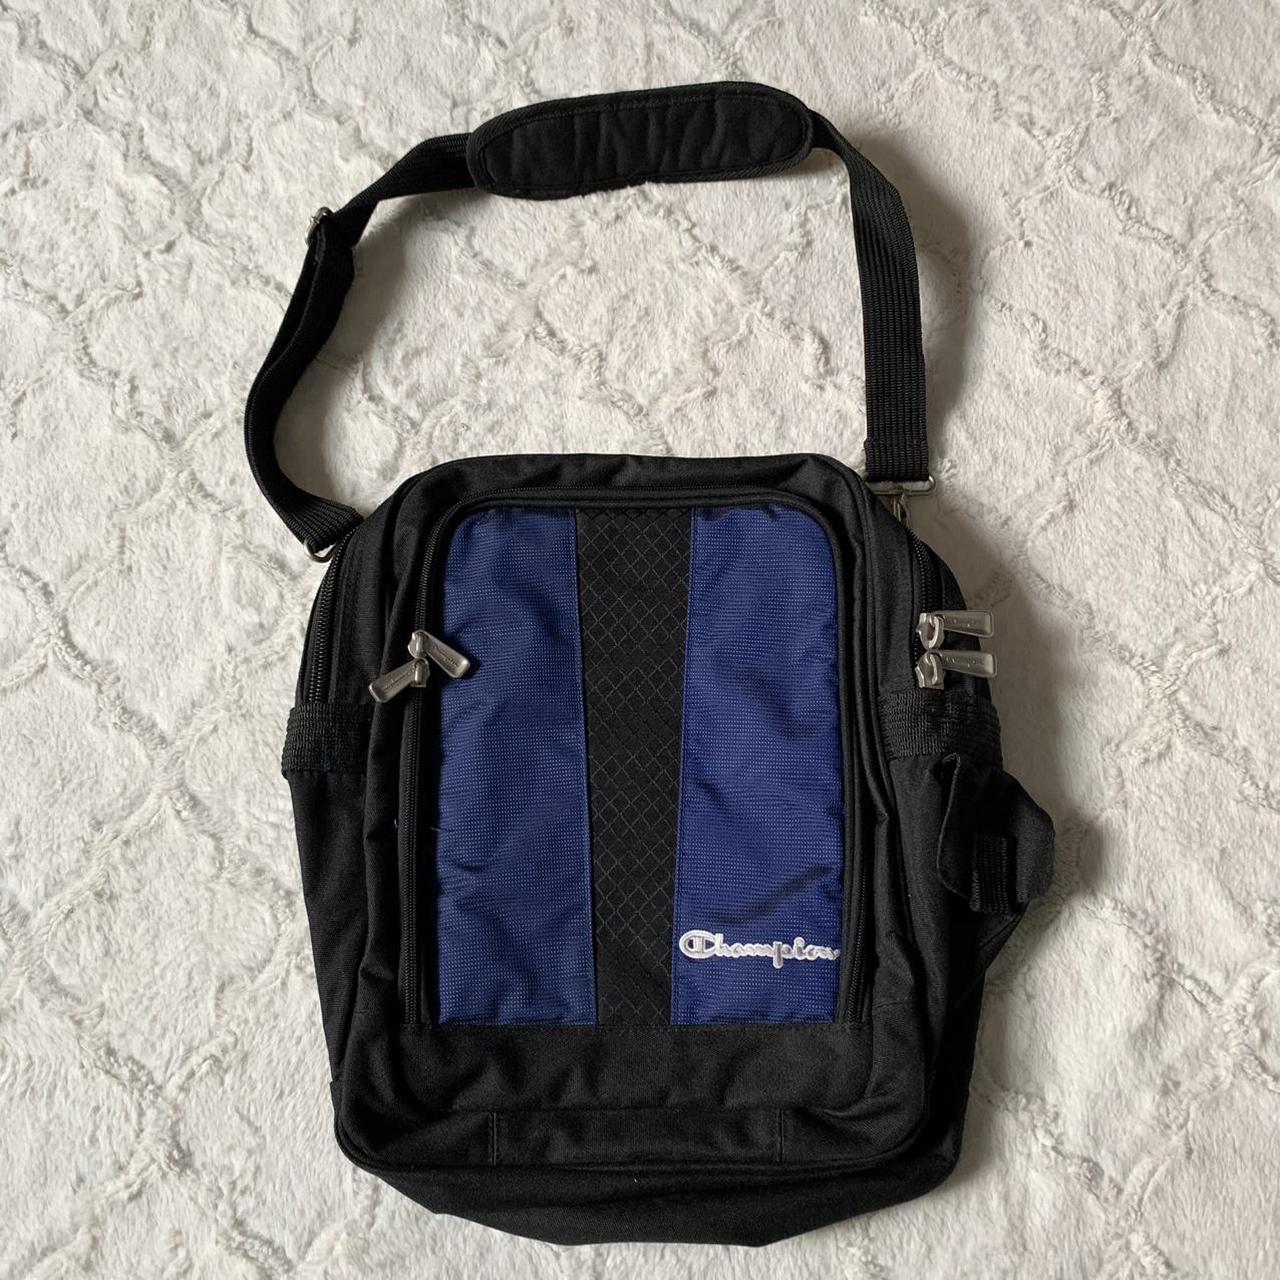 Vintage 90s Champion XL Shoulder Bag in... - Depop